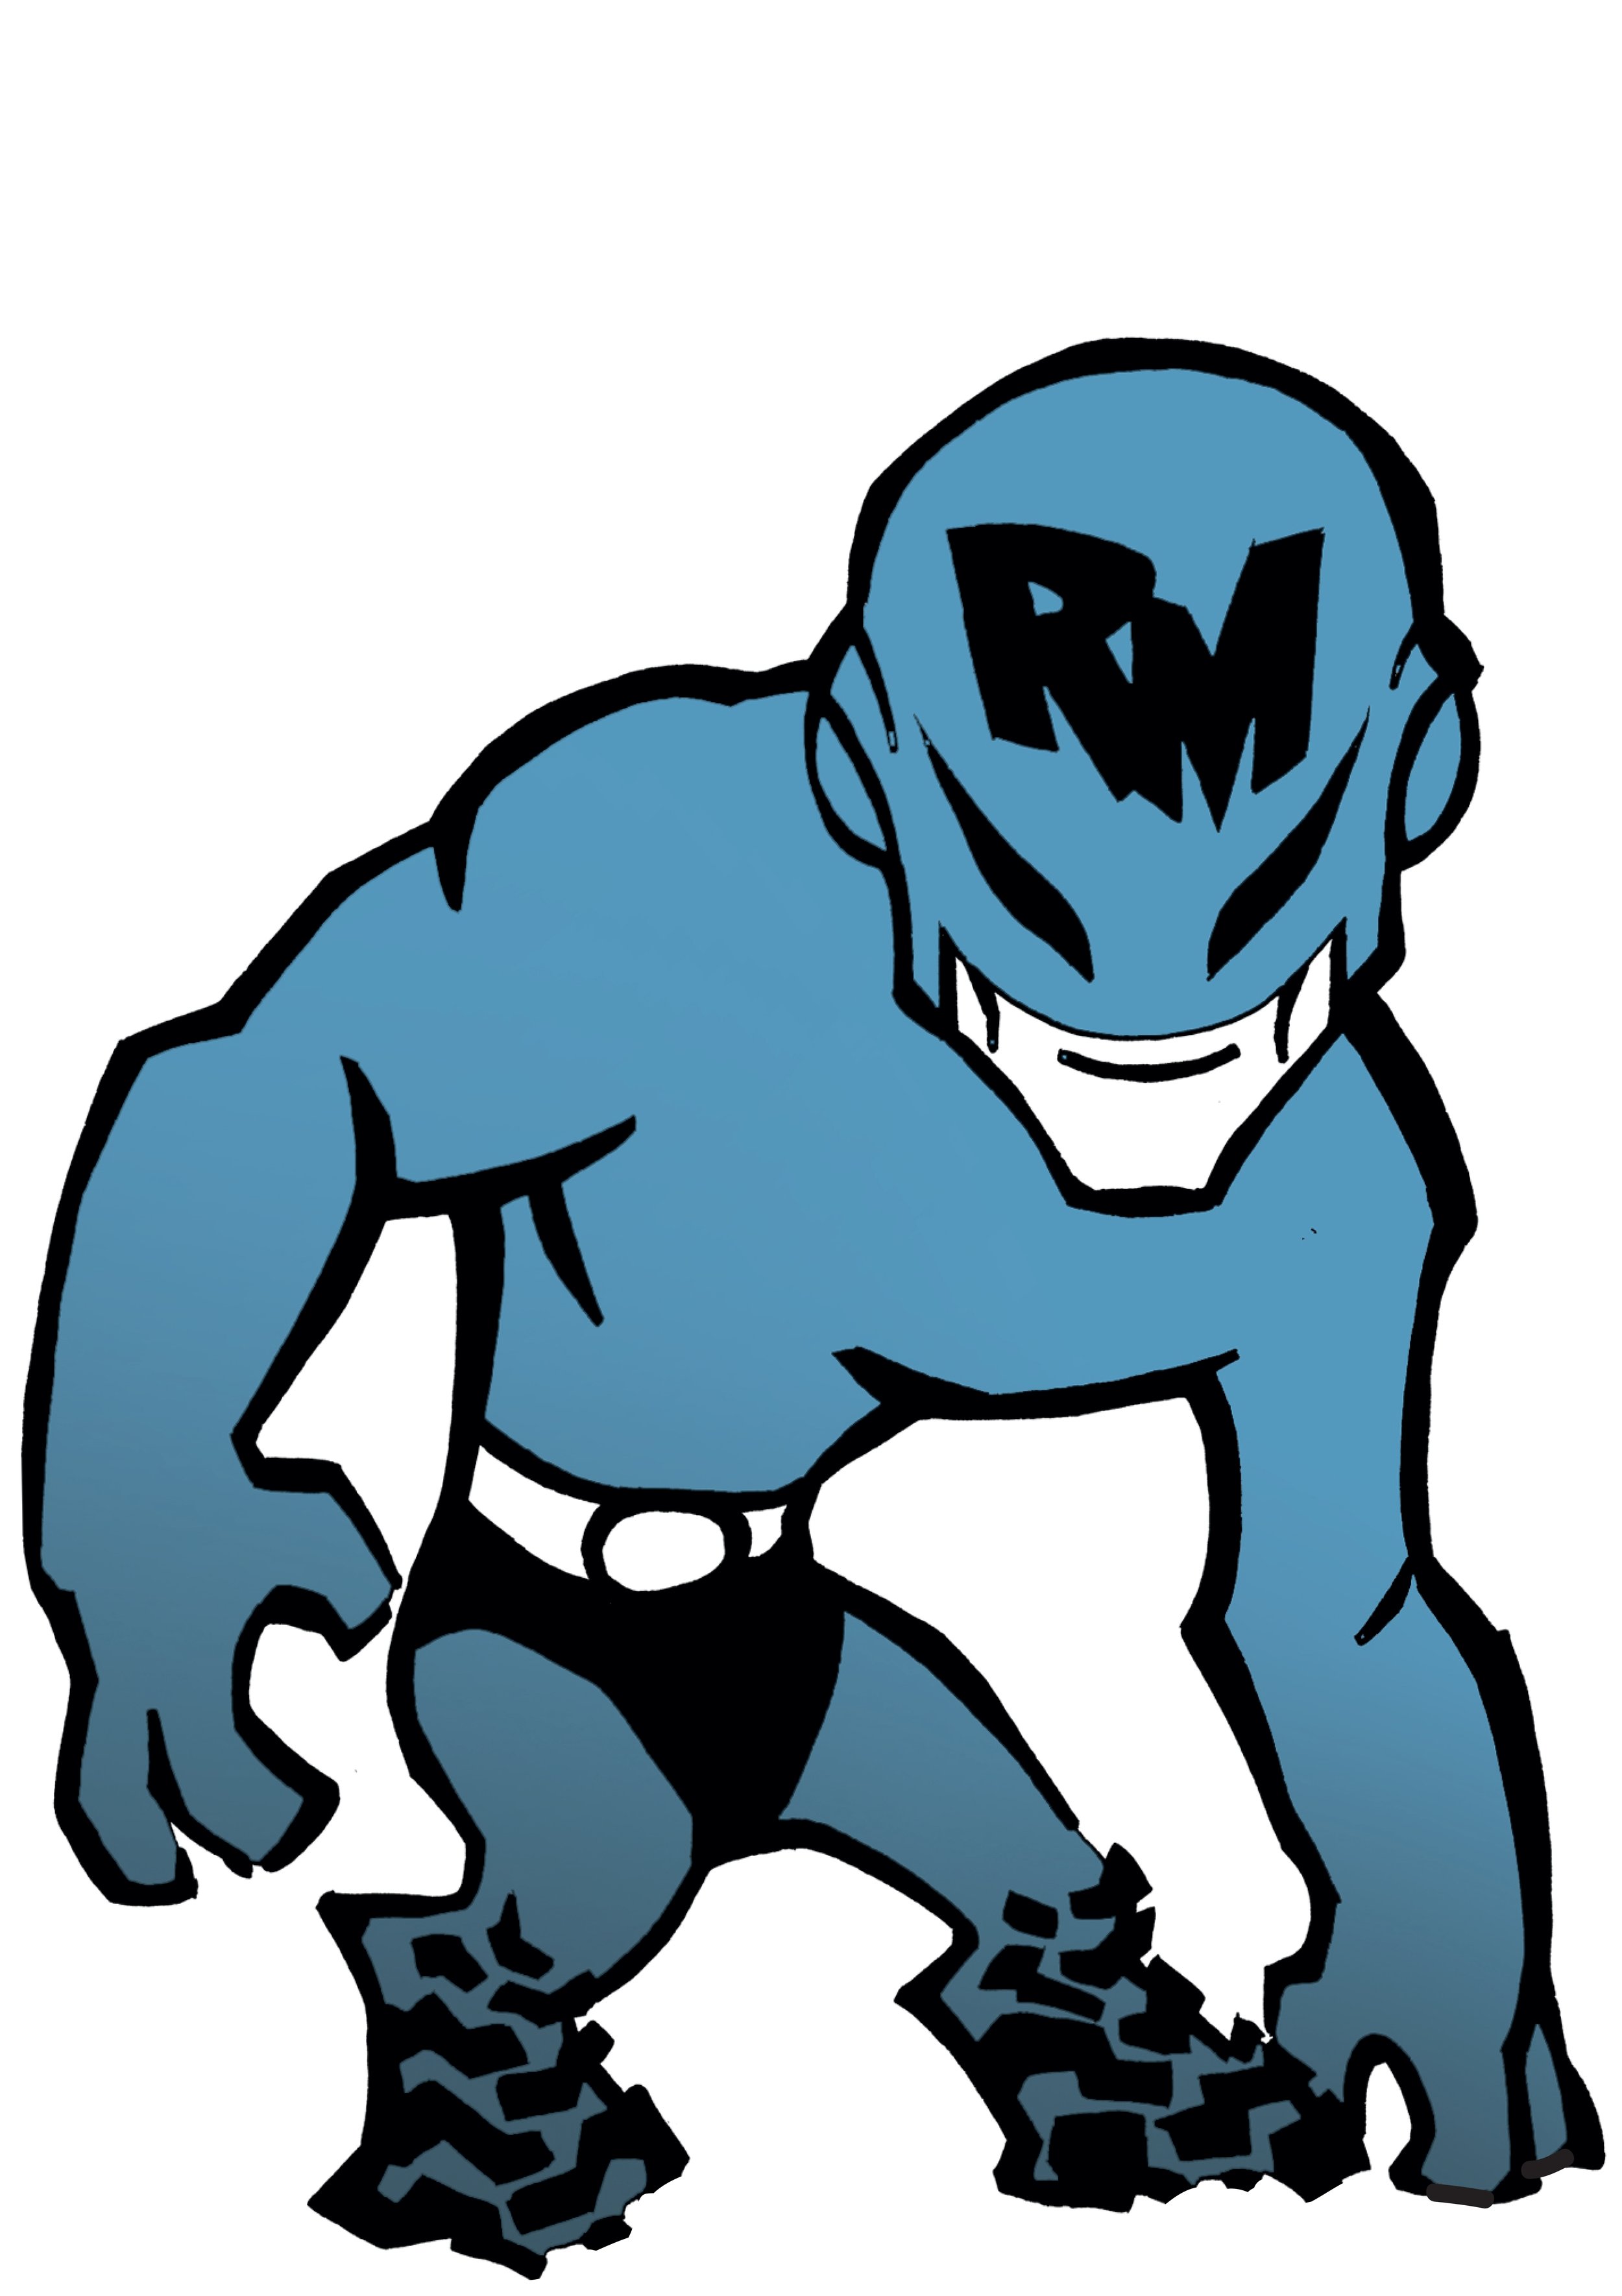 rm.logo.cutout.jpg